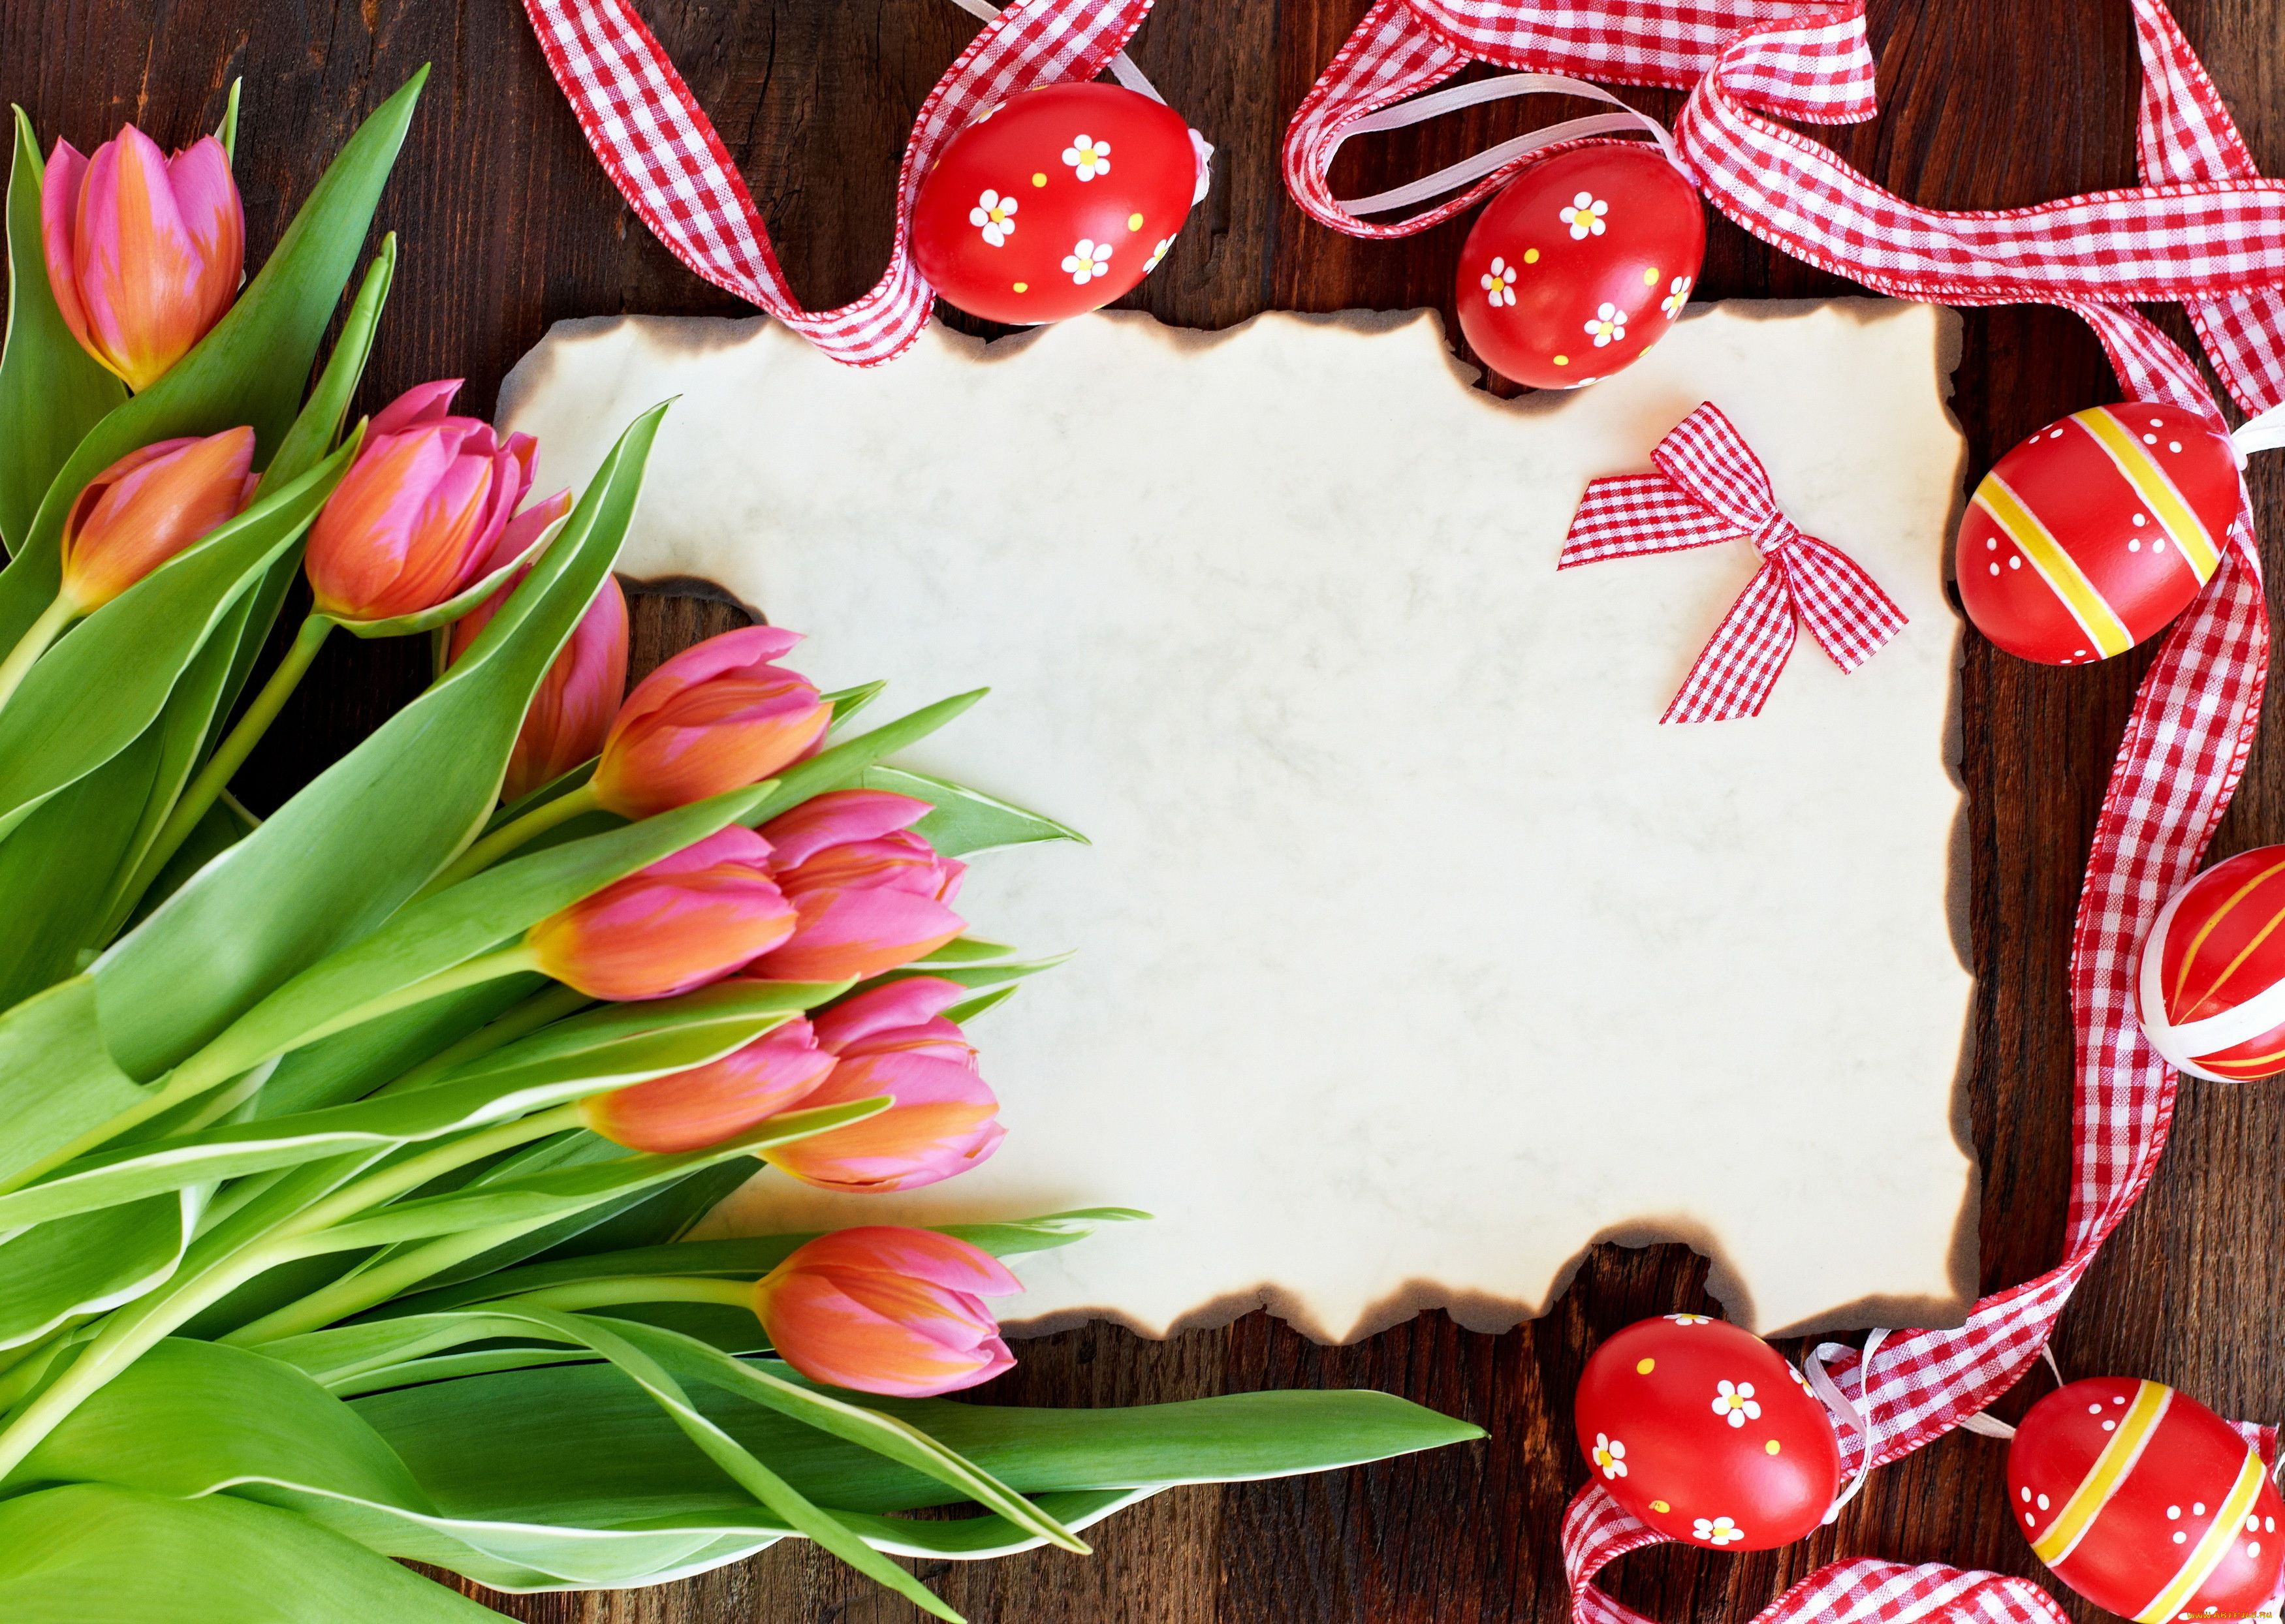 праздничные, пасха, тюльпаны, card, tulips, red, flowers, eggs, easter